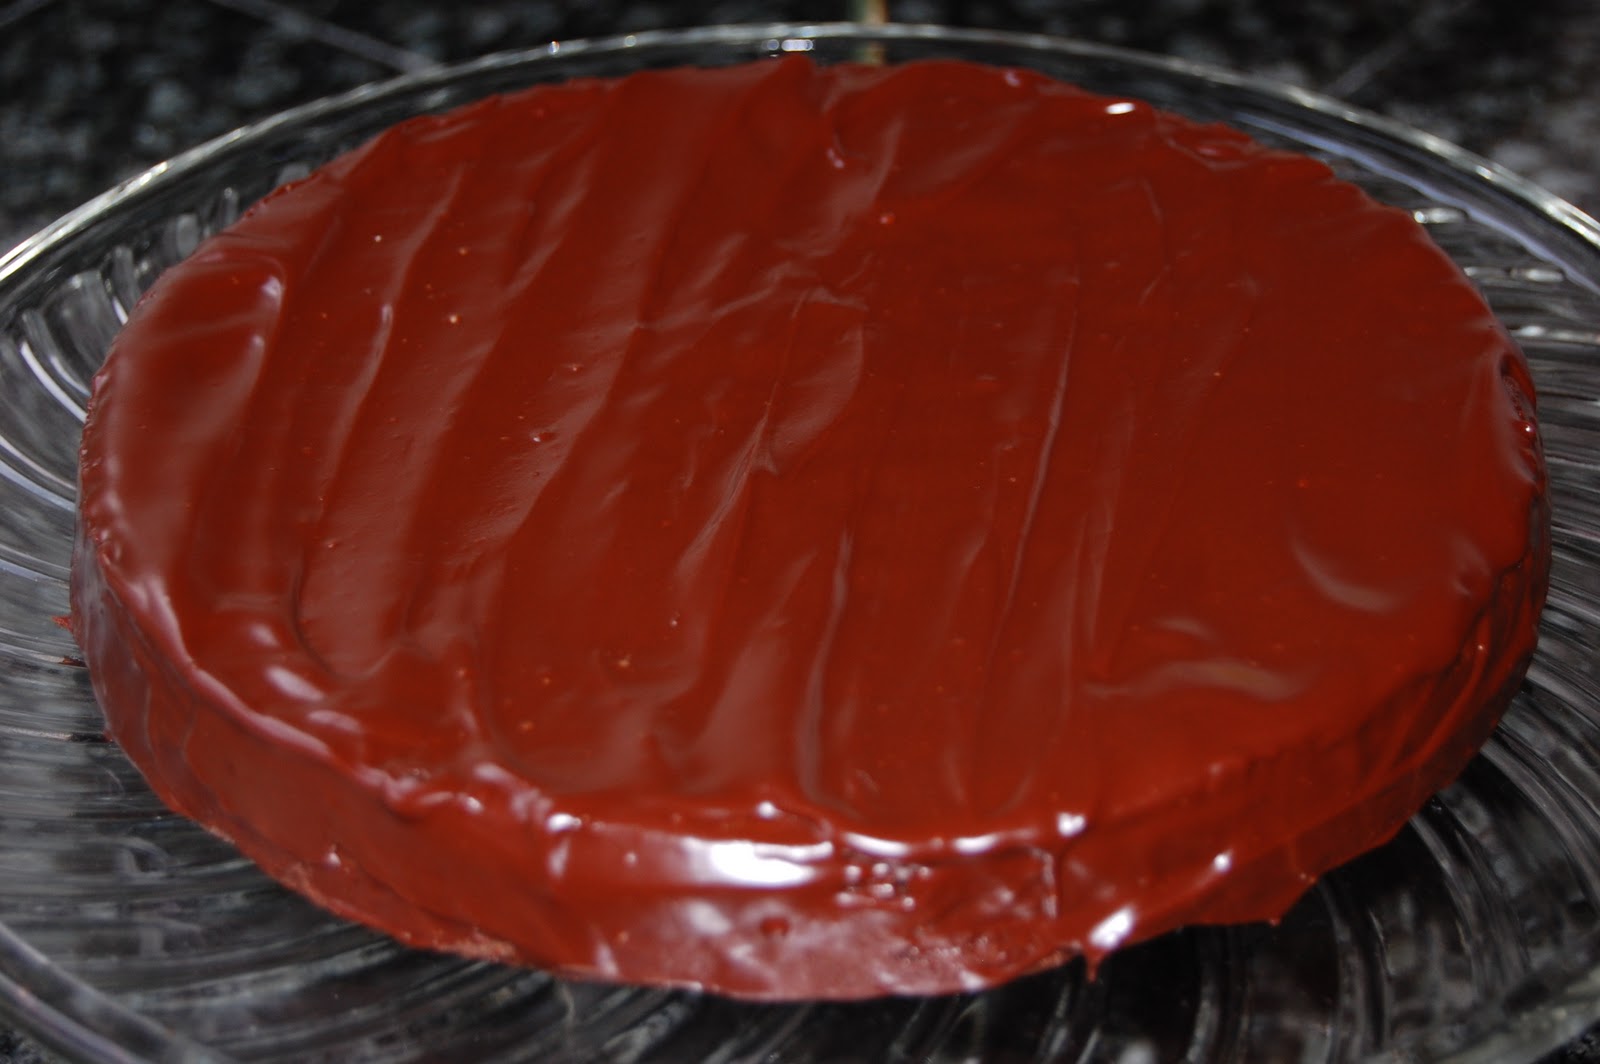 Loren's Dish: DECADENT CHOCOLATE CAKE